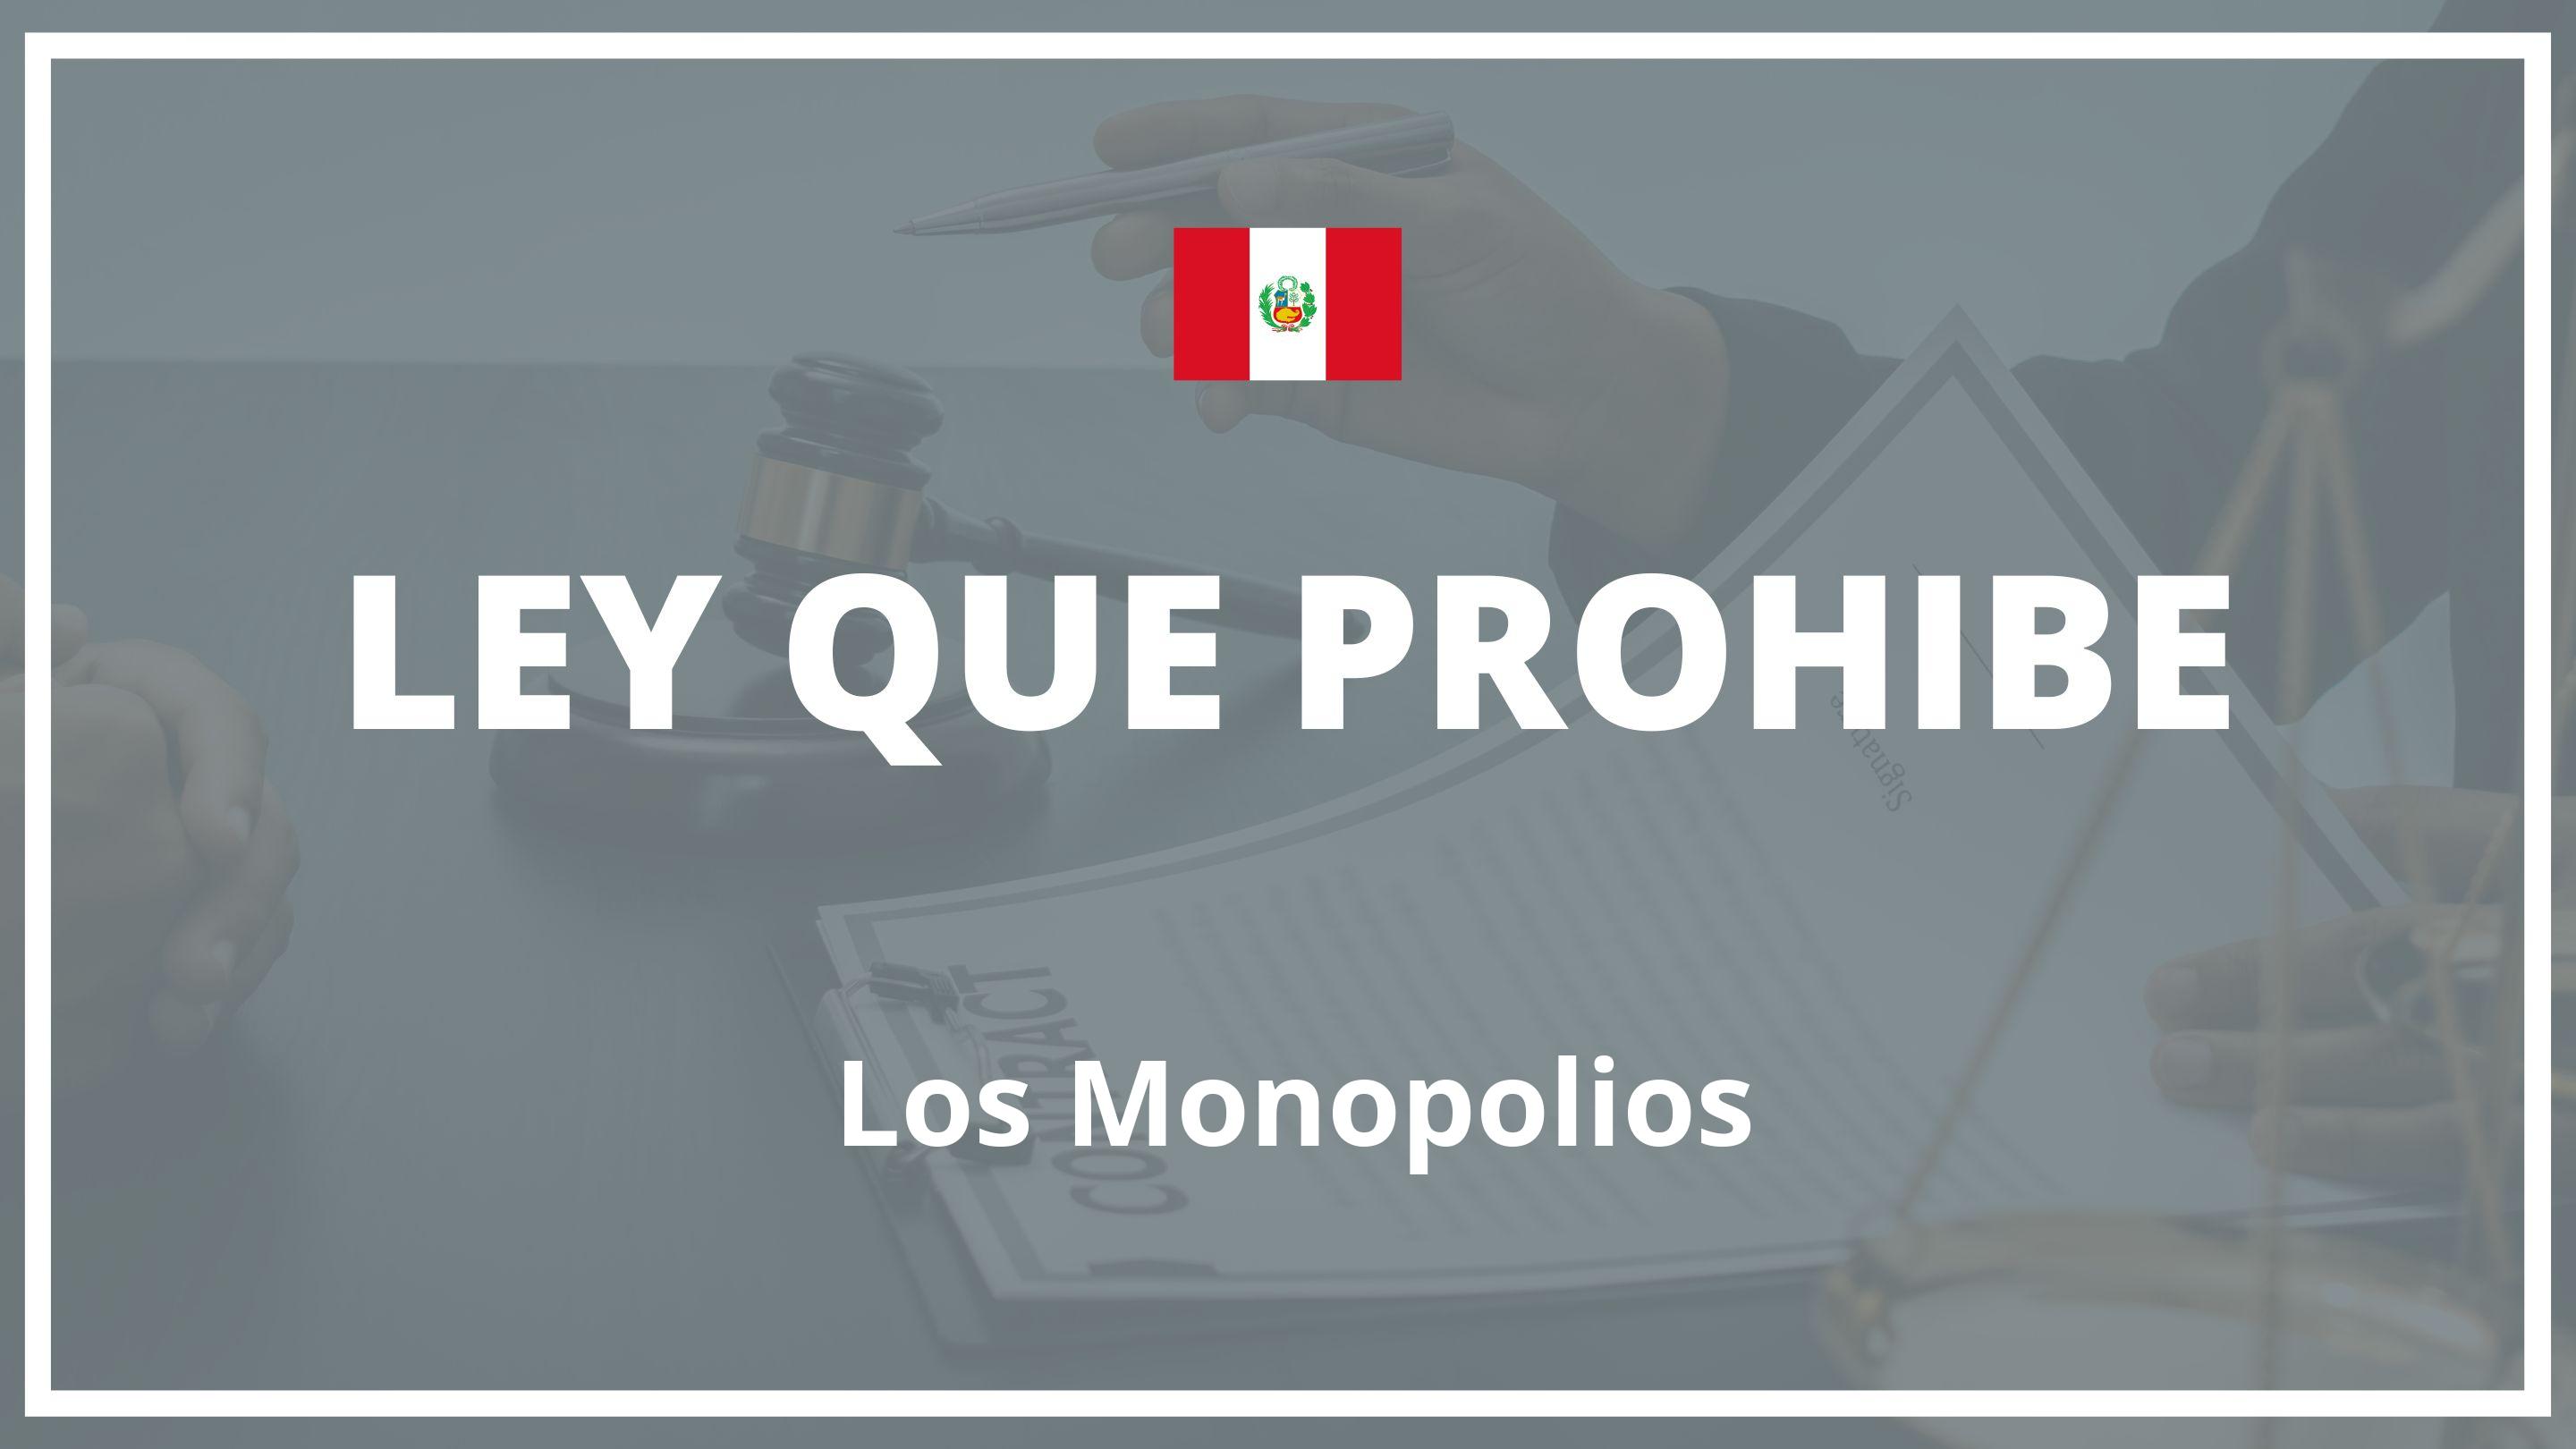 Ley que prohibe los monopolios Peru